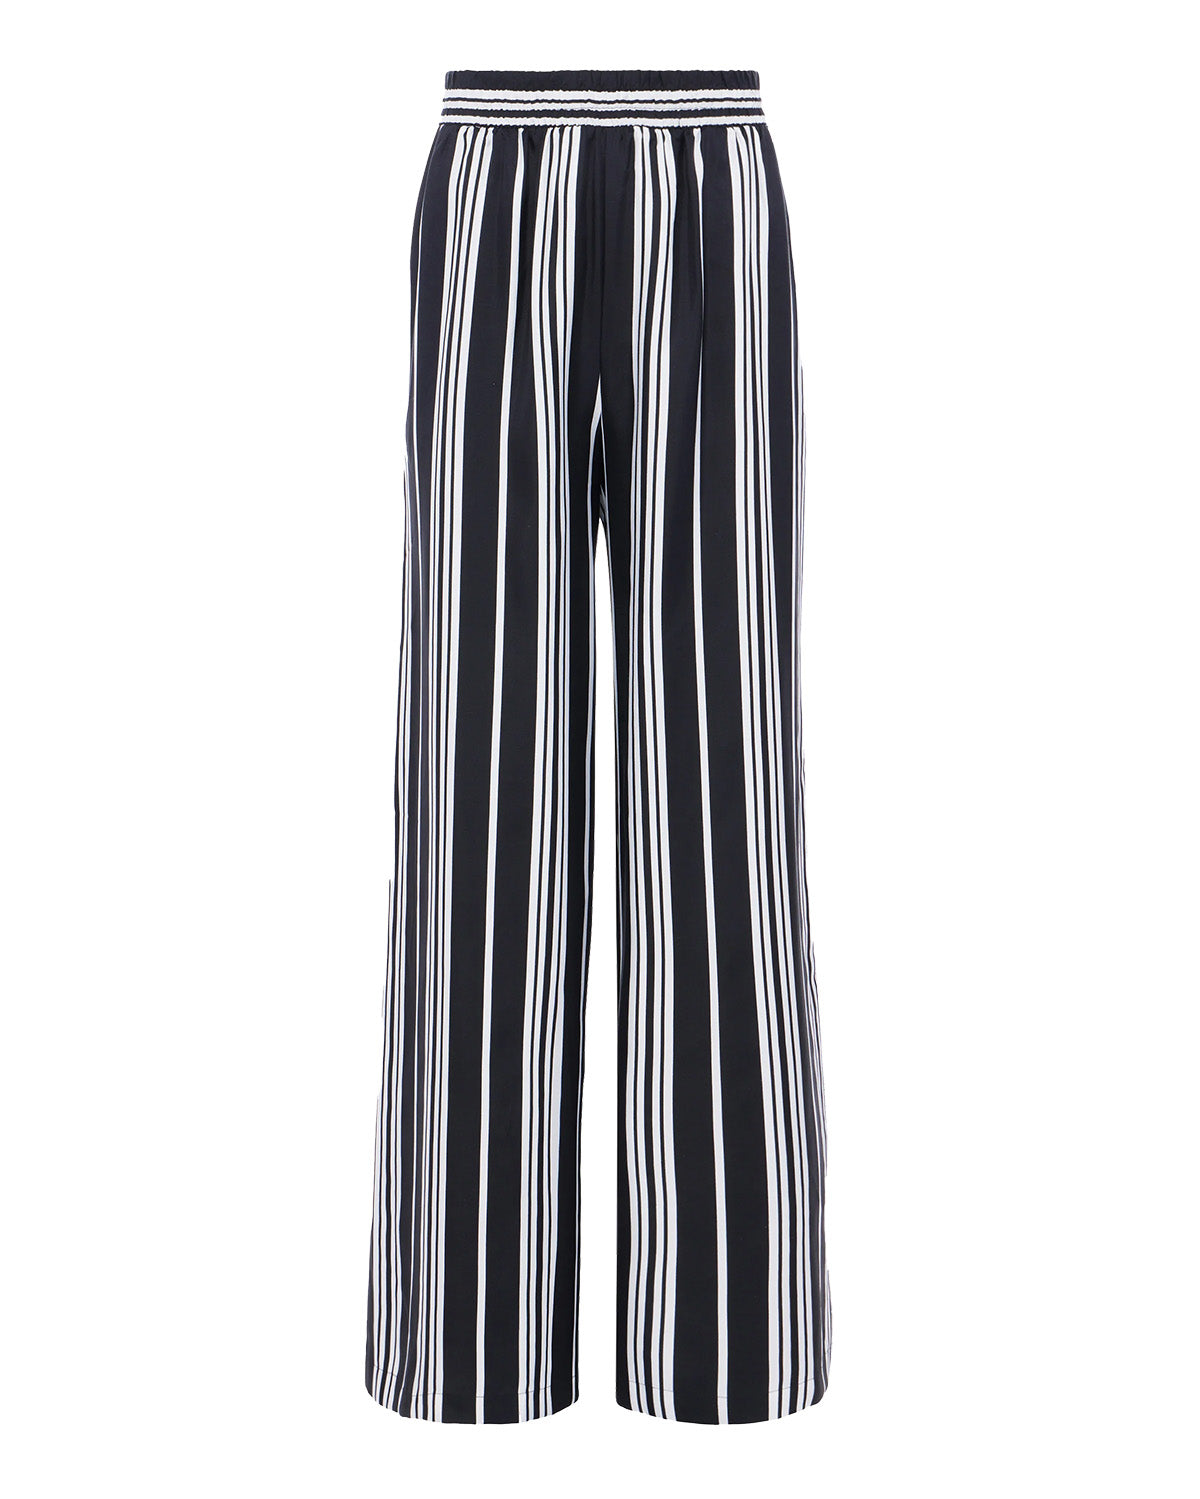 Lillian Wide Leg Pant (Black/White Stripe)